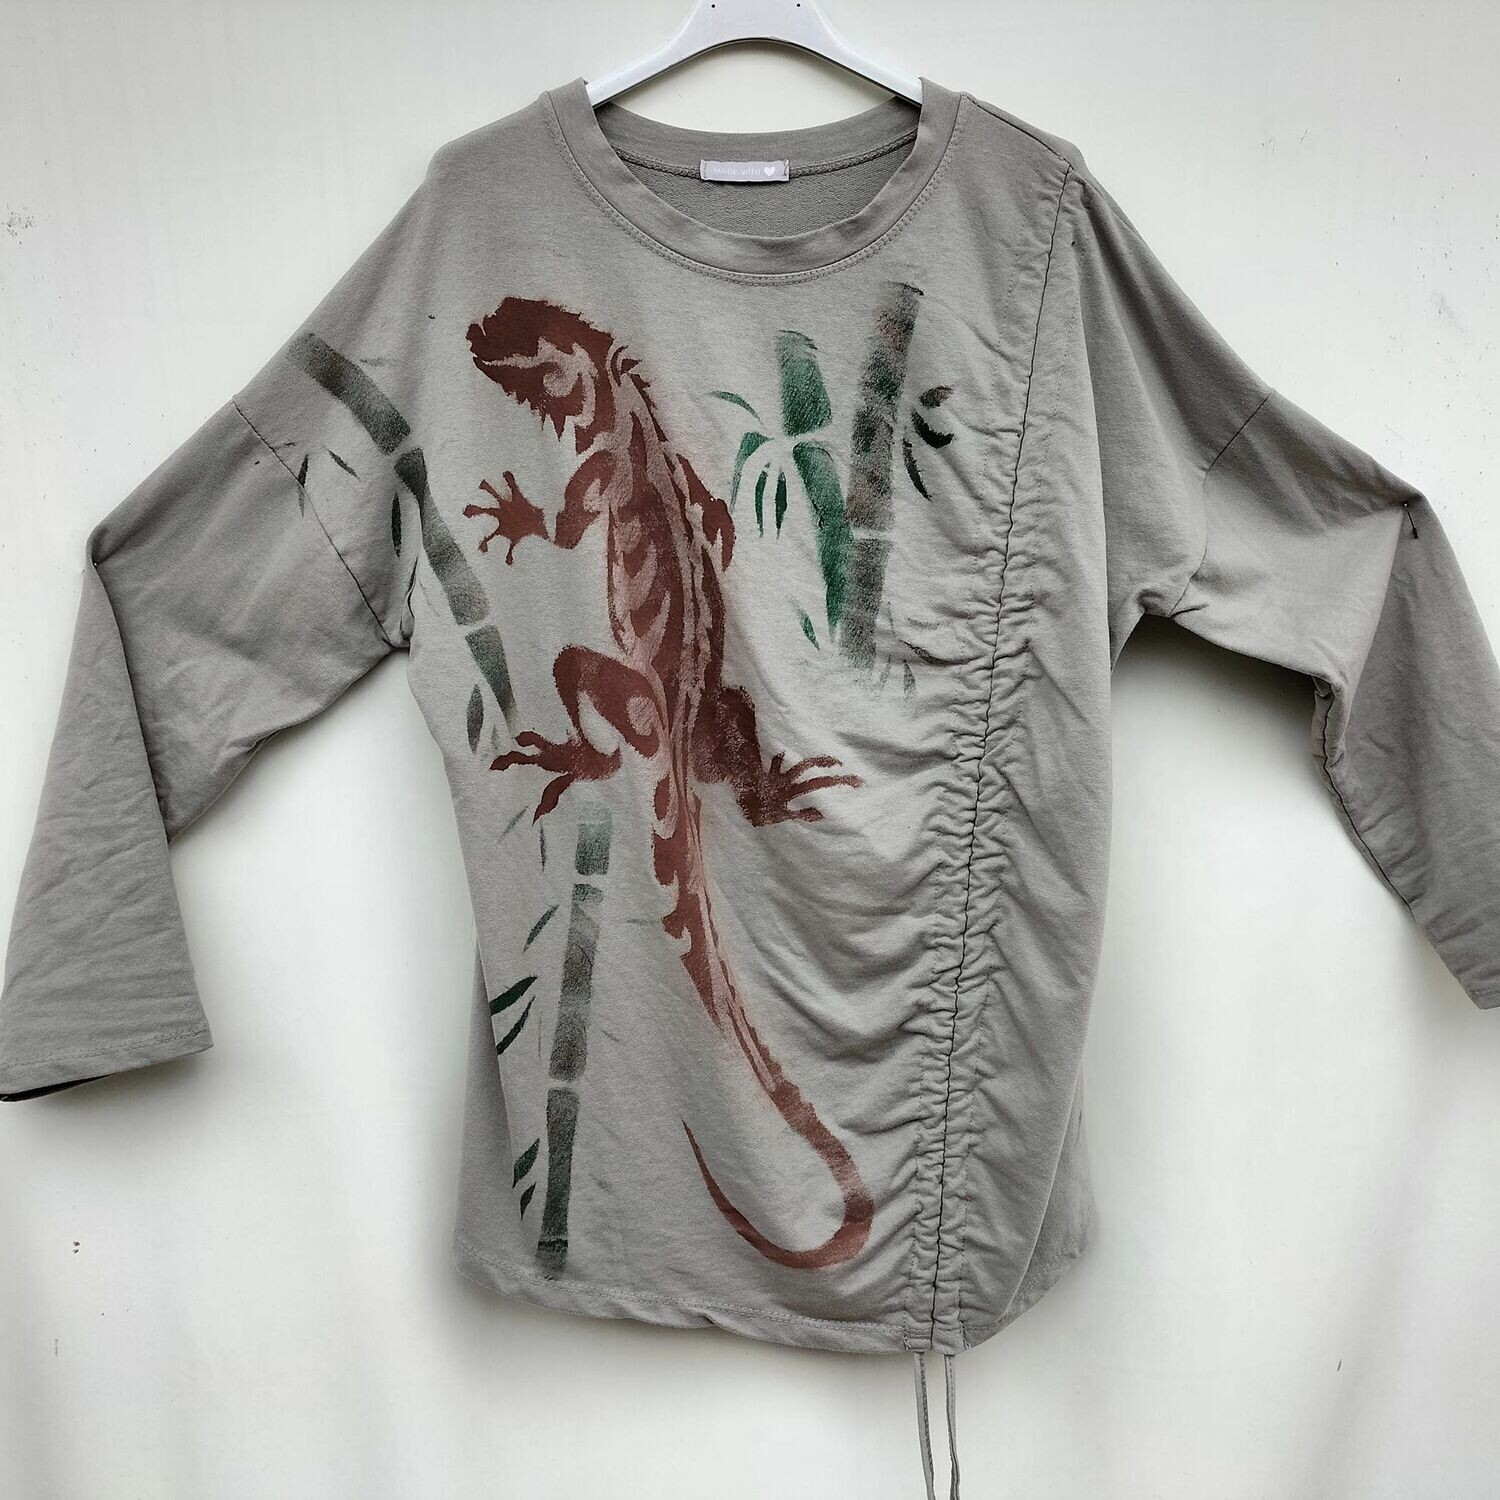 Camiseta beage, talla única,fruncido lateral, selva.